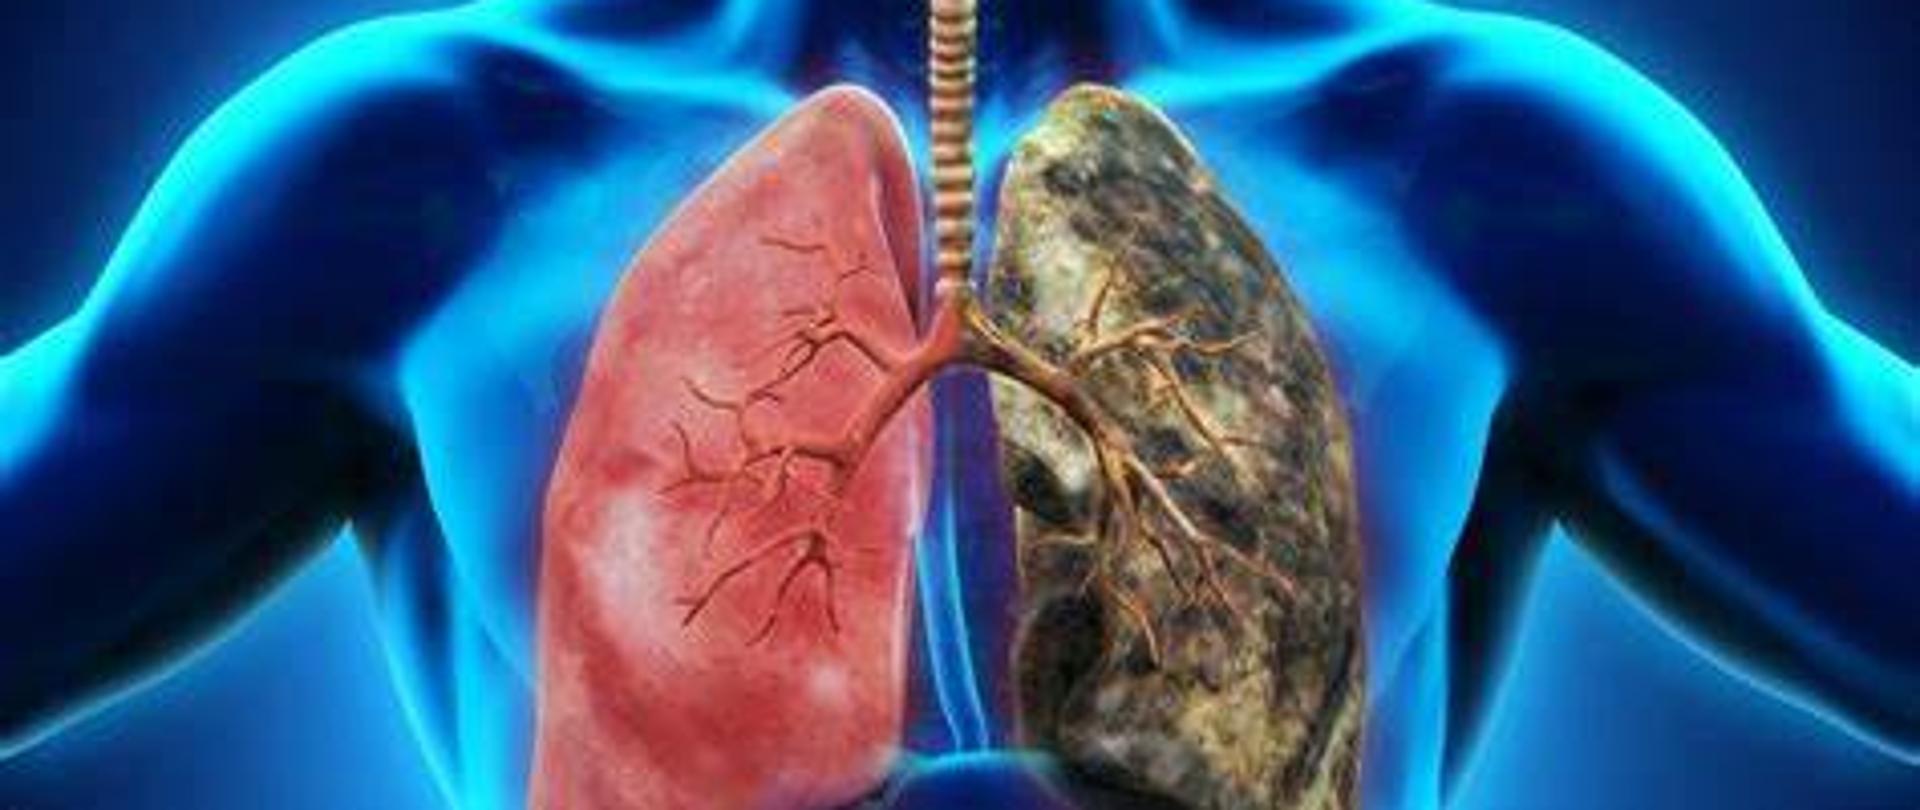 Plakat przedstawiający zdrowe i chore płuco